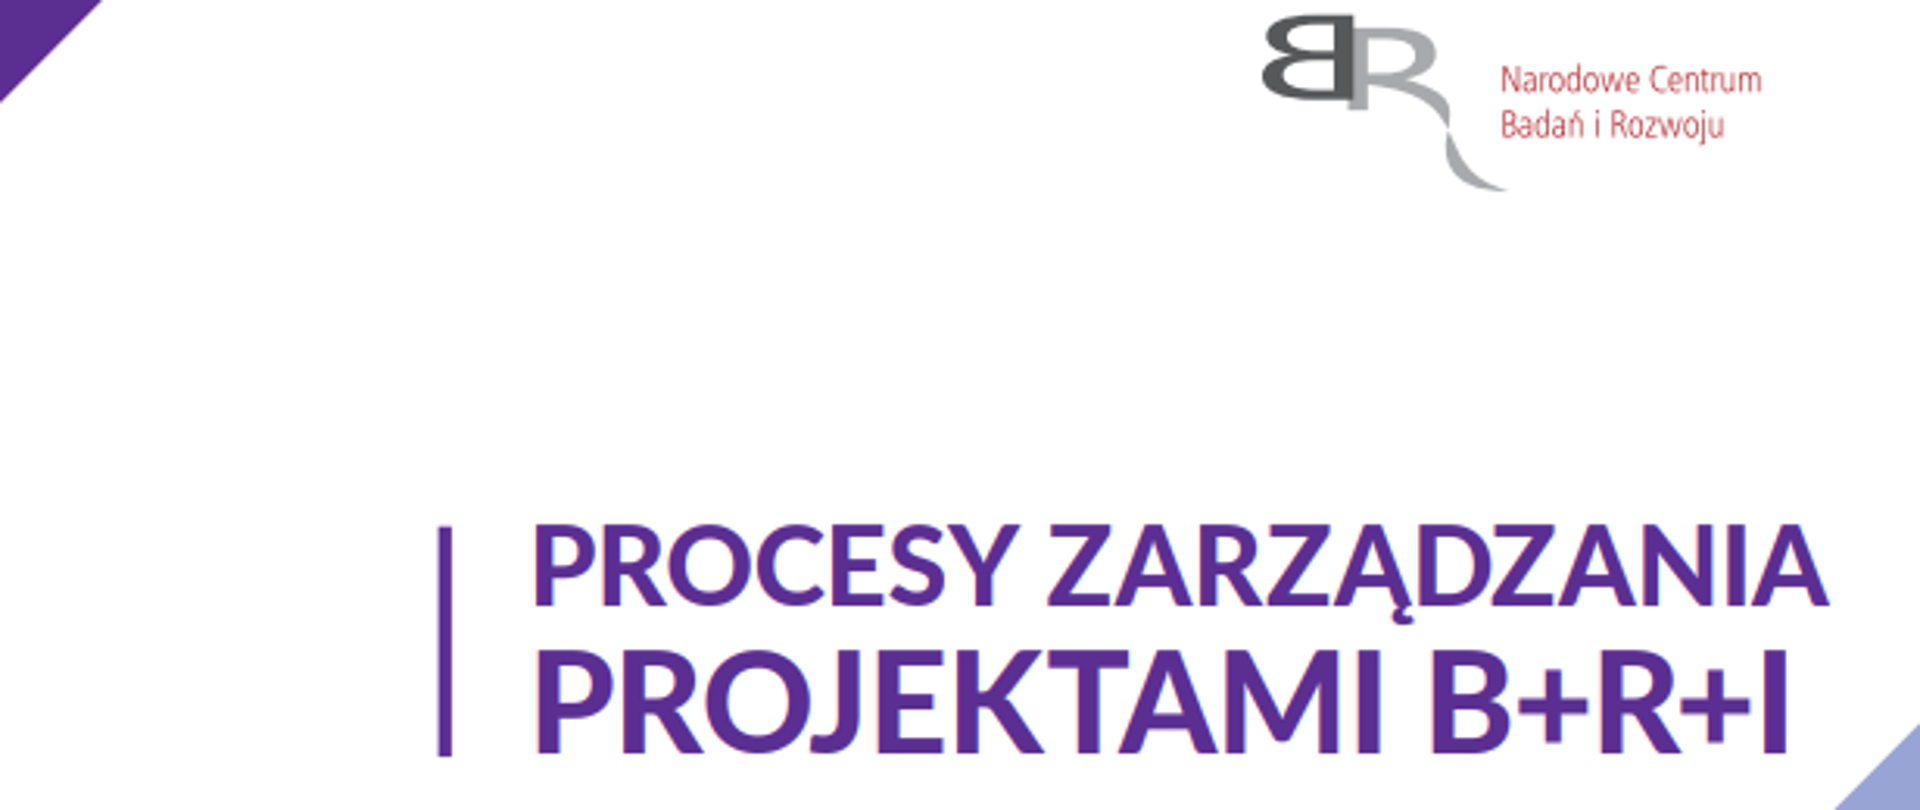 Biało - fioletowy baner raportu z badania procesy zarządzania projektami B+R+I